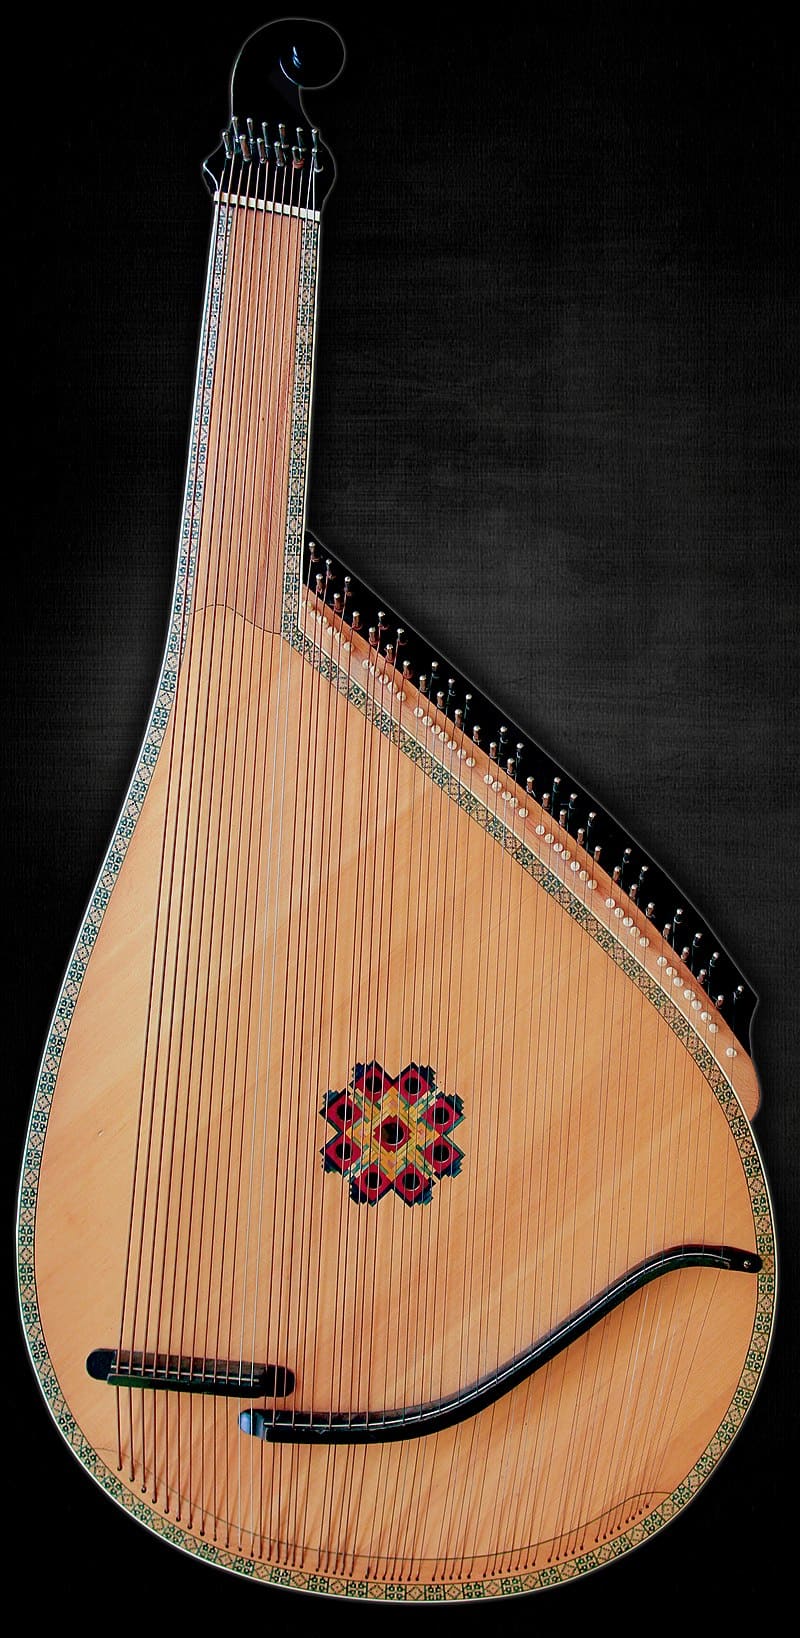 National instrument of Ukraine - Bandura